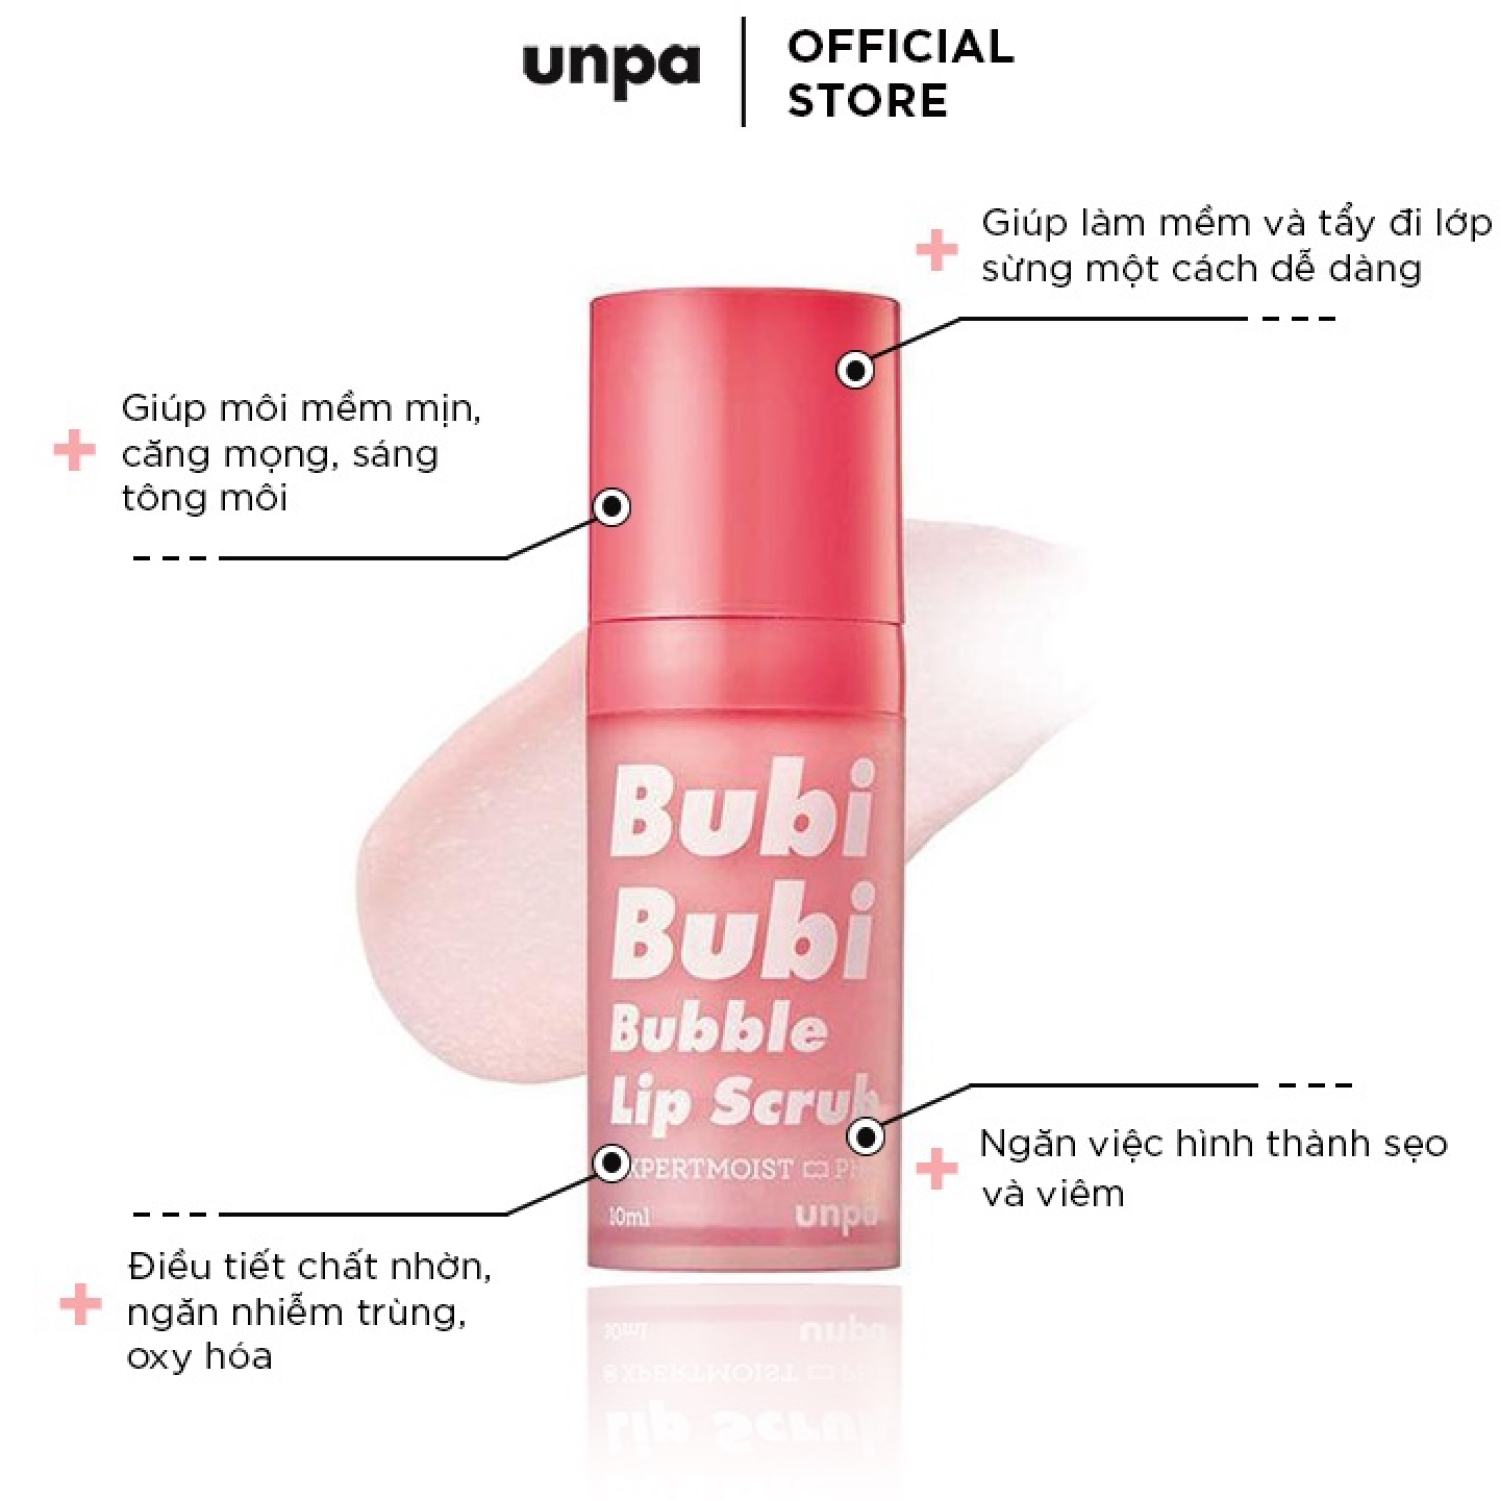 Combo gel tẩy tế bào chết môi và son dưỡng môi làm hồng và căng mọng môi Unpa Bubi Bubi Lip Scrub 10ml + Unpa Bubi Bubi Lip Balm 3.8g